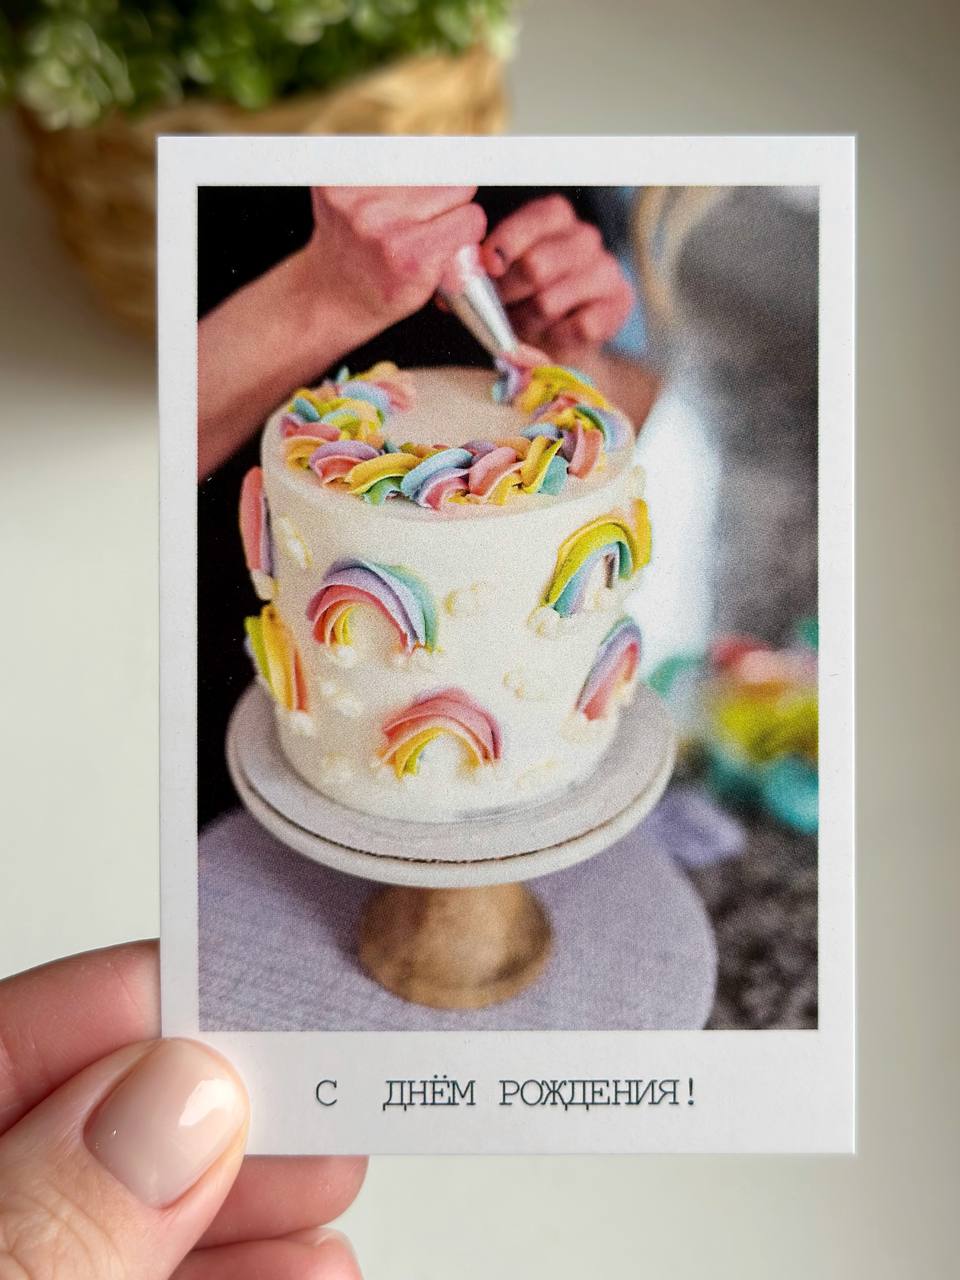 Фотокарточка "С днем рождения! Радужный торт"